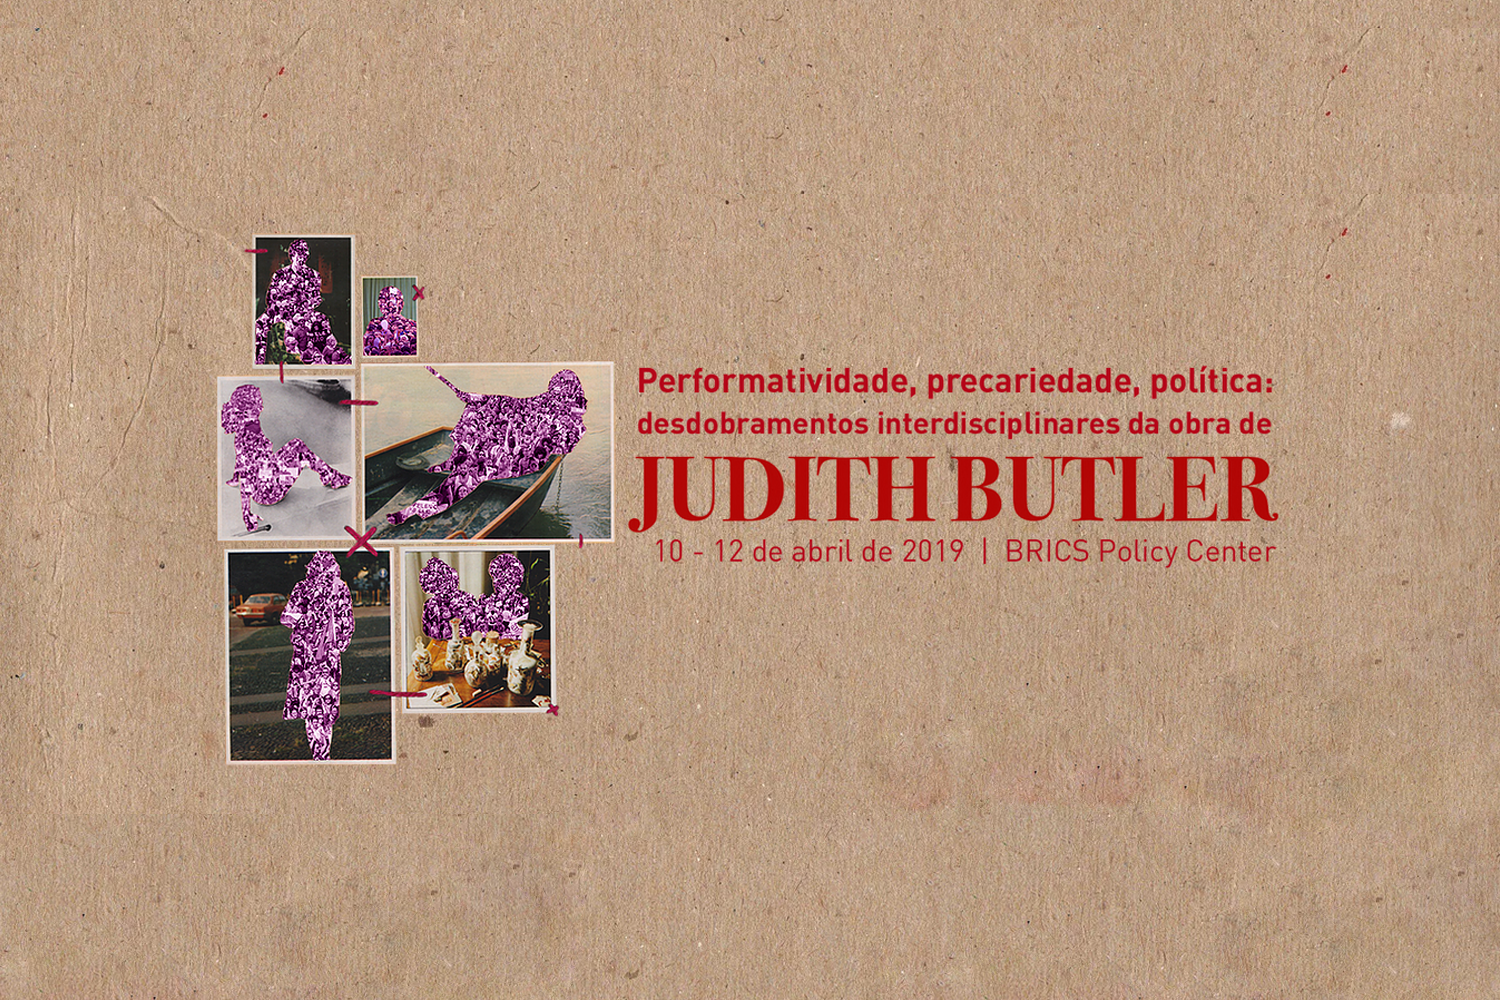 Performatividade, precariedade, política: Judith Butler